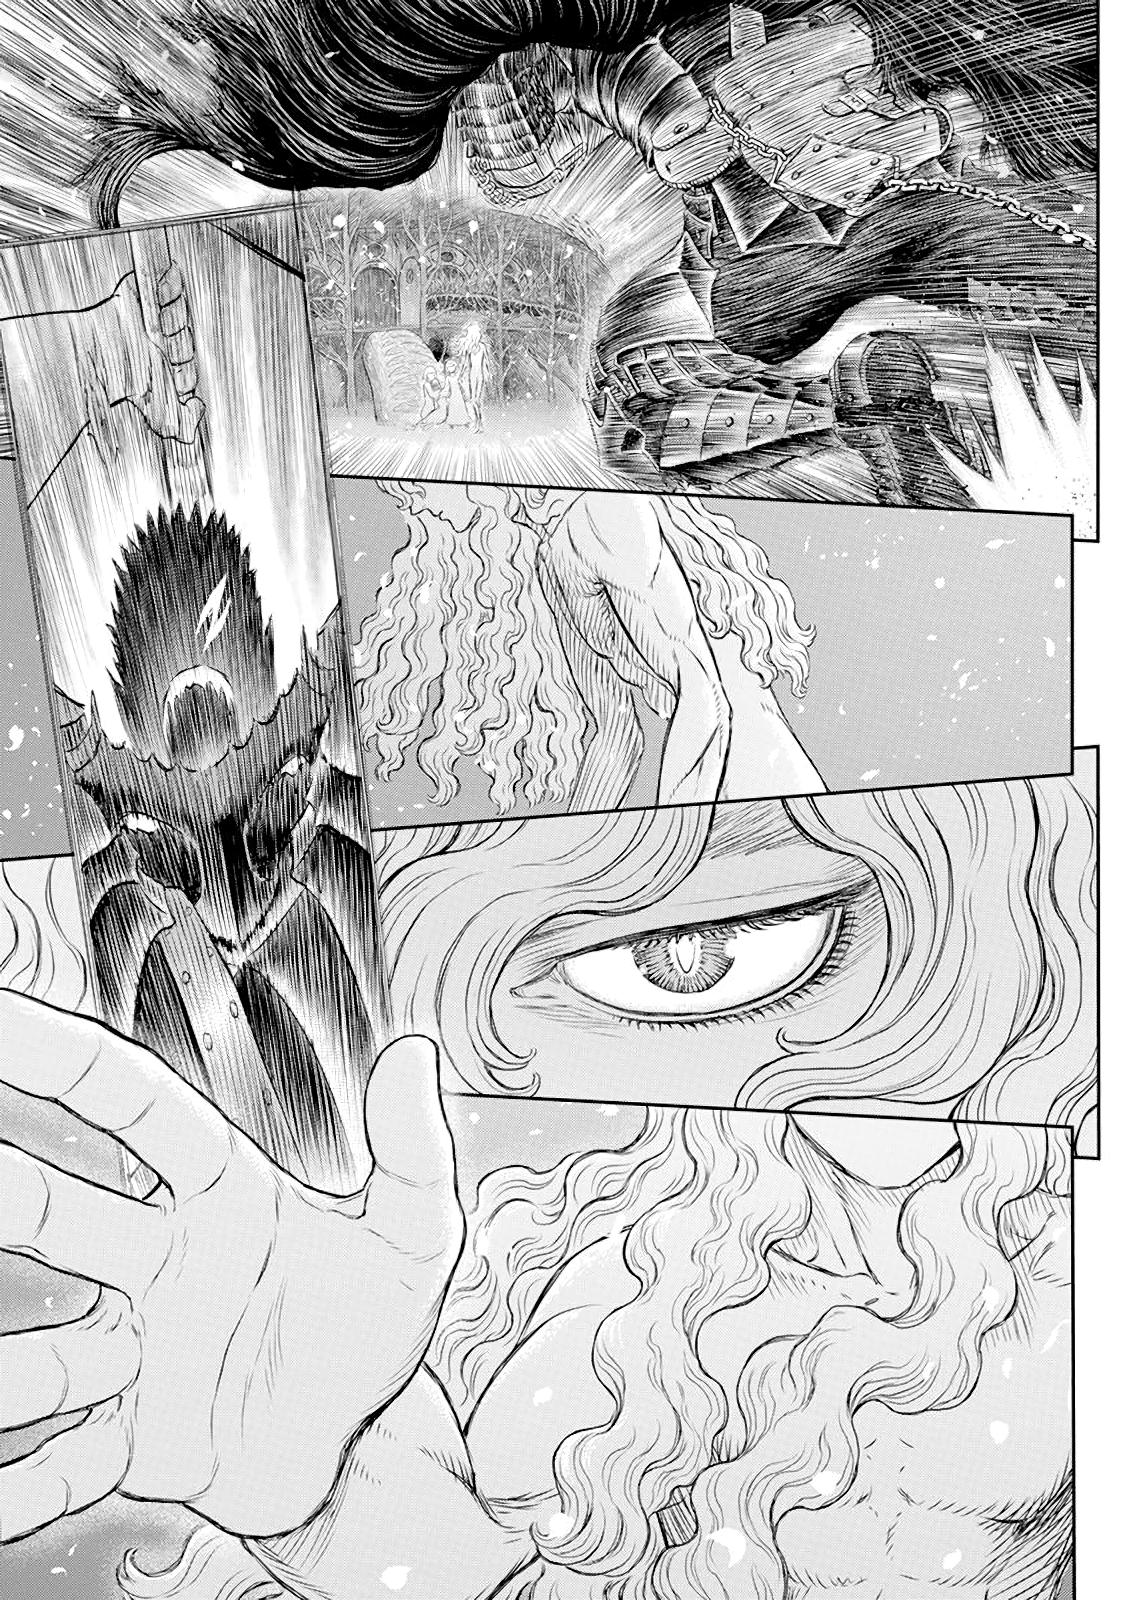 Berserk Manga Chapter 367 image 07